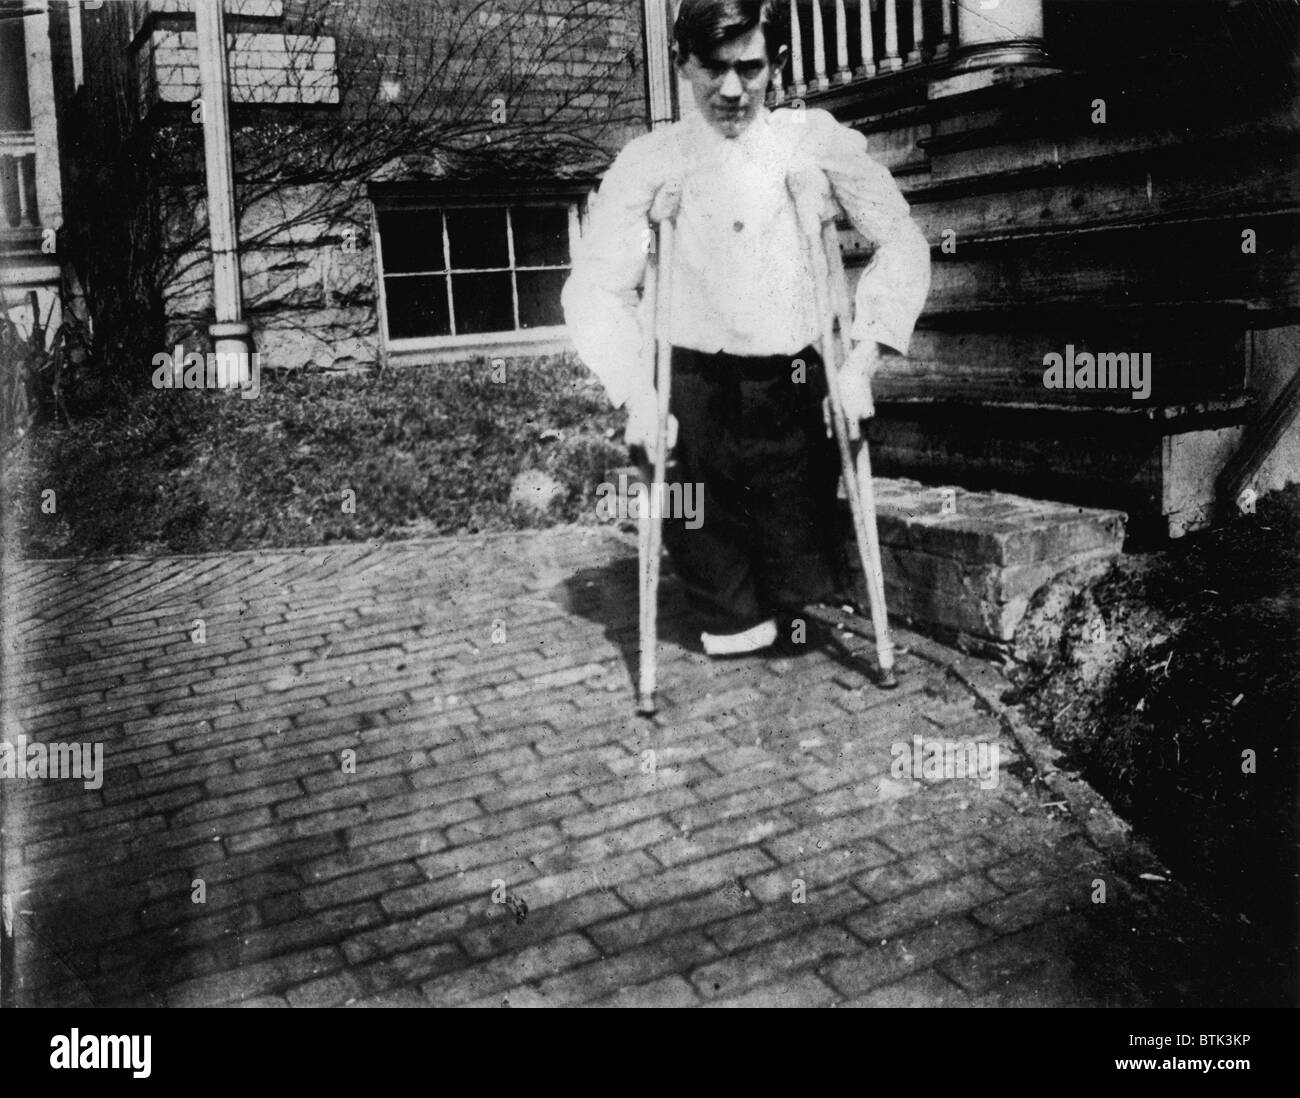 Le travail des enfants, Frank P., les jambes ont été coupées par une automobile dans une mine de charbon lorsqu'il était âgé de 14 ans, Monongah, West Virginia, photo de Lewis Wickes Hine, Mars, 1910 Banque D'Images